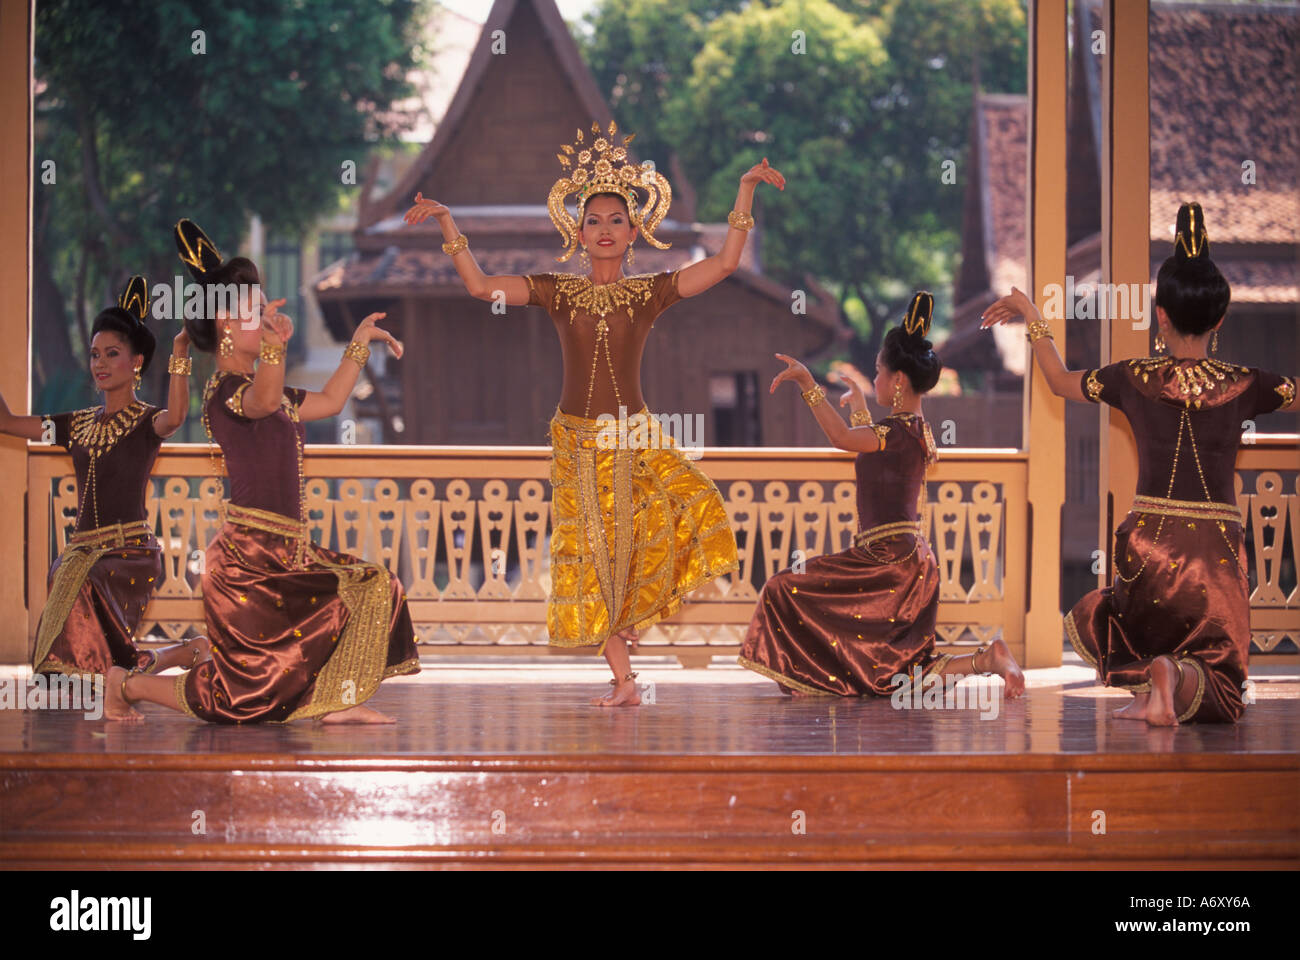 Des danseurs traditionnels thaïlandais, le palais de Vinmanmek, Bangkok, Thaïlande Banque D'Images